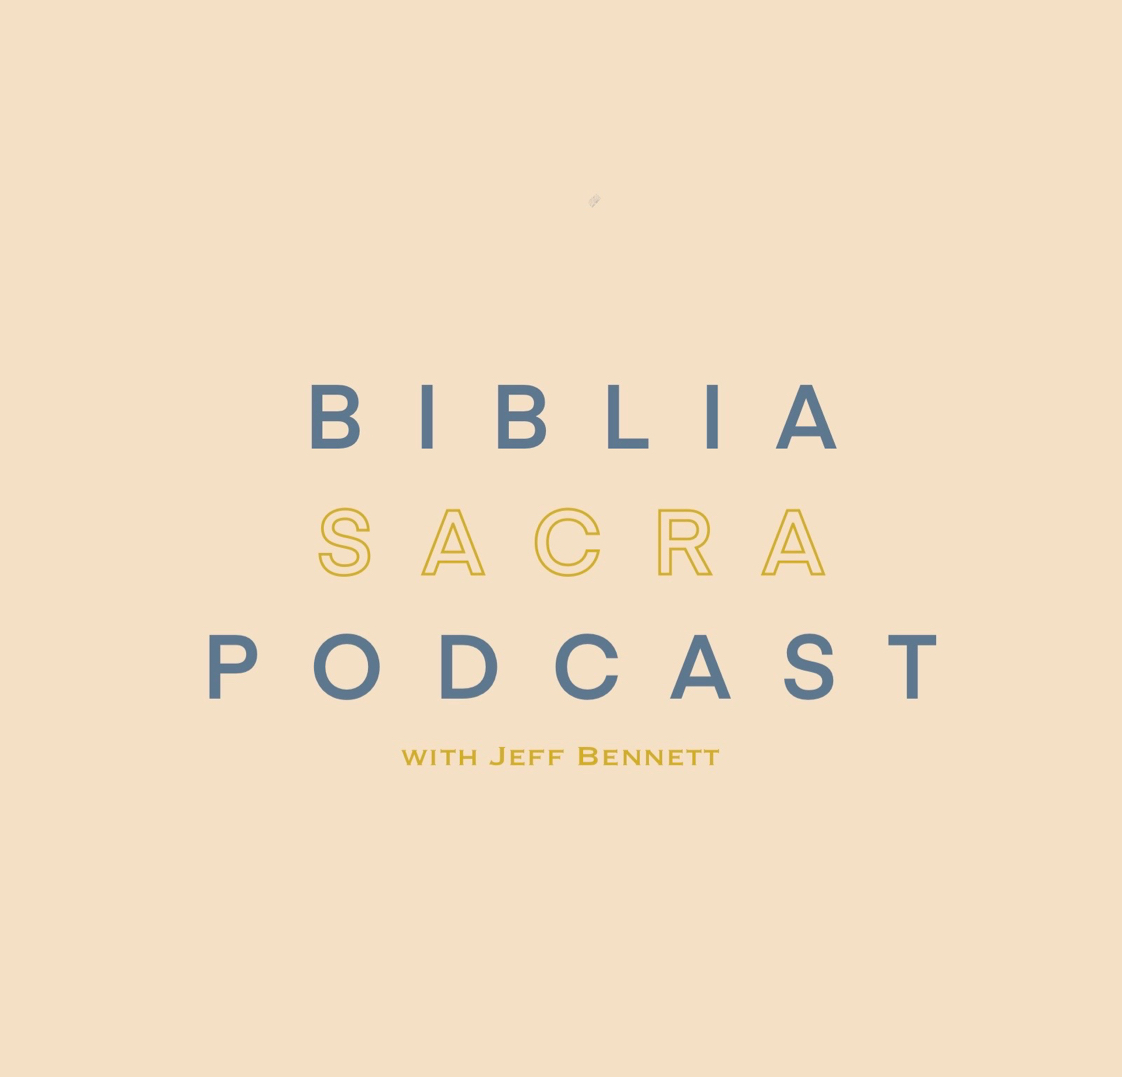 The Biblia Sacra Podcast